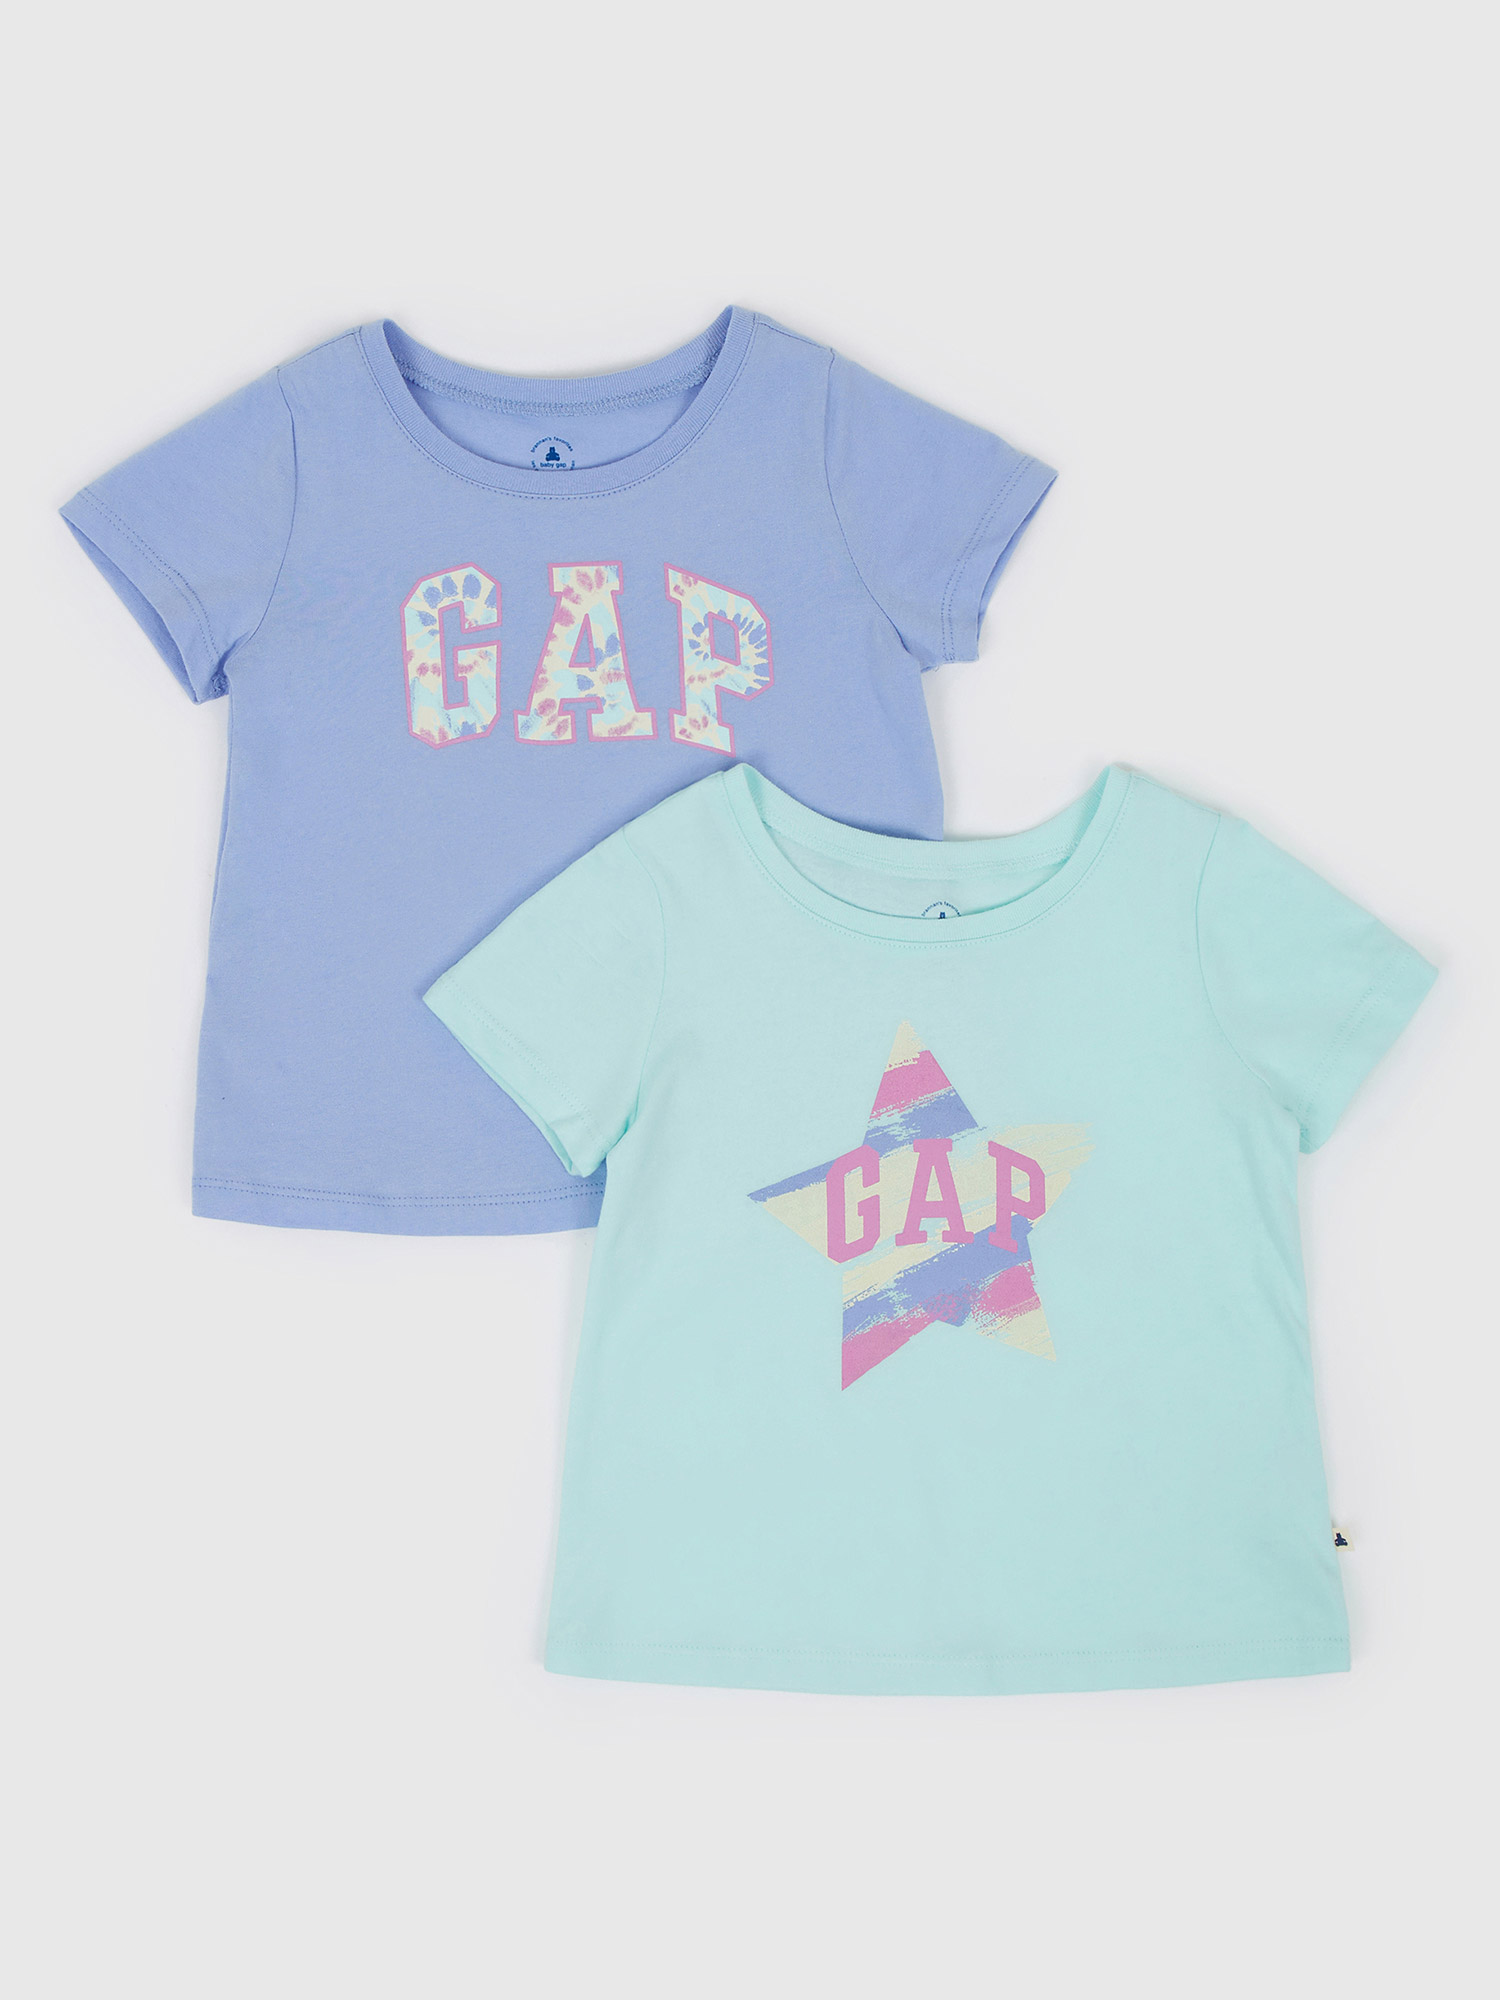 GAP Kids T-shirts logo, 2pcs - Girls